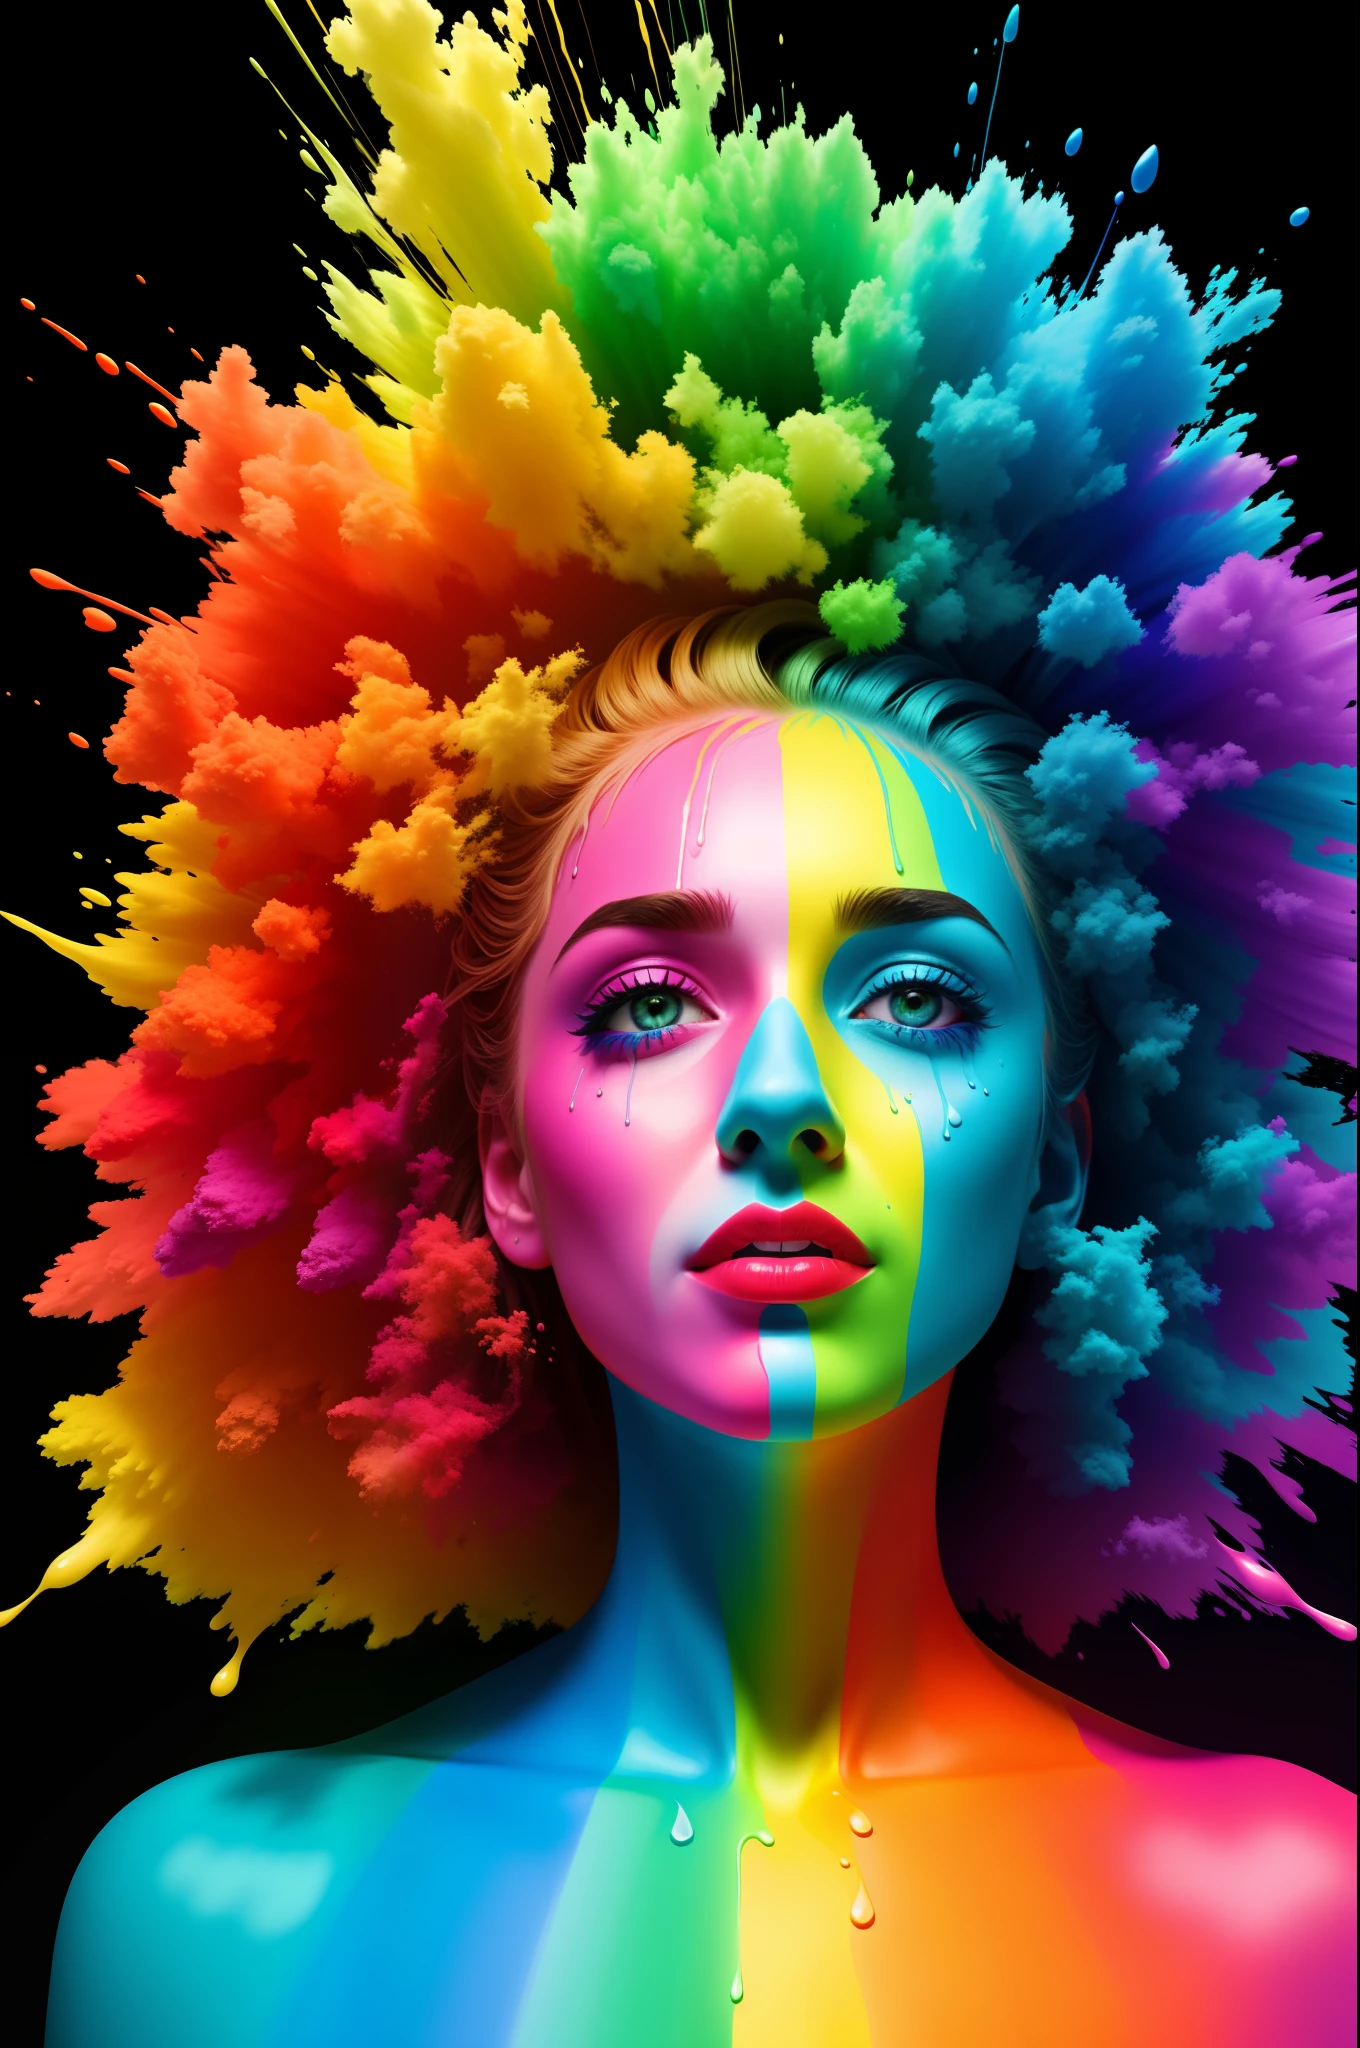 "Je ne vais pas passer ma vie à être une couleur" enduit de peinture de différentes couleurs arc-en-ciel, photo hyper réelle, technique de goutte à goutte, discorde pfp, couleur 10 bits, hdr, 8k